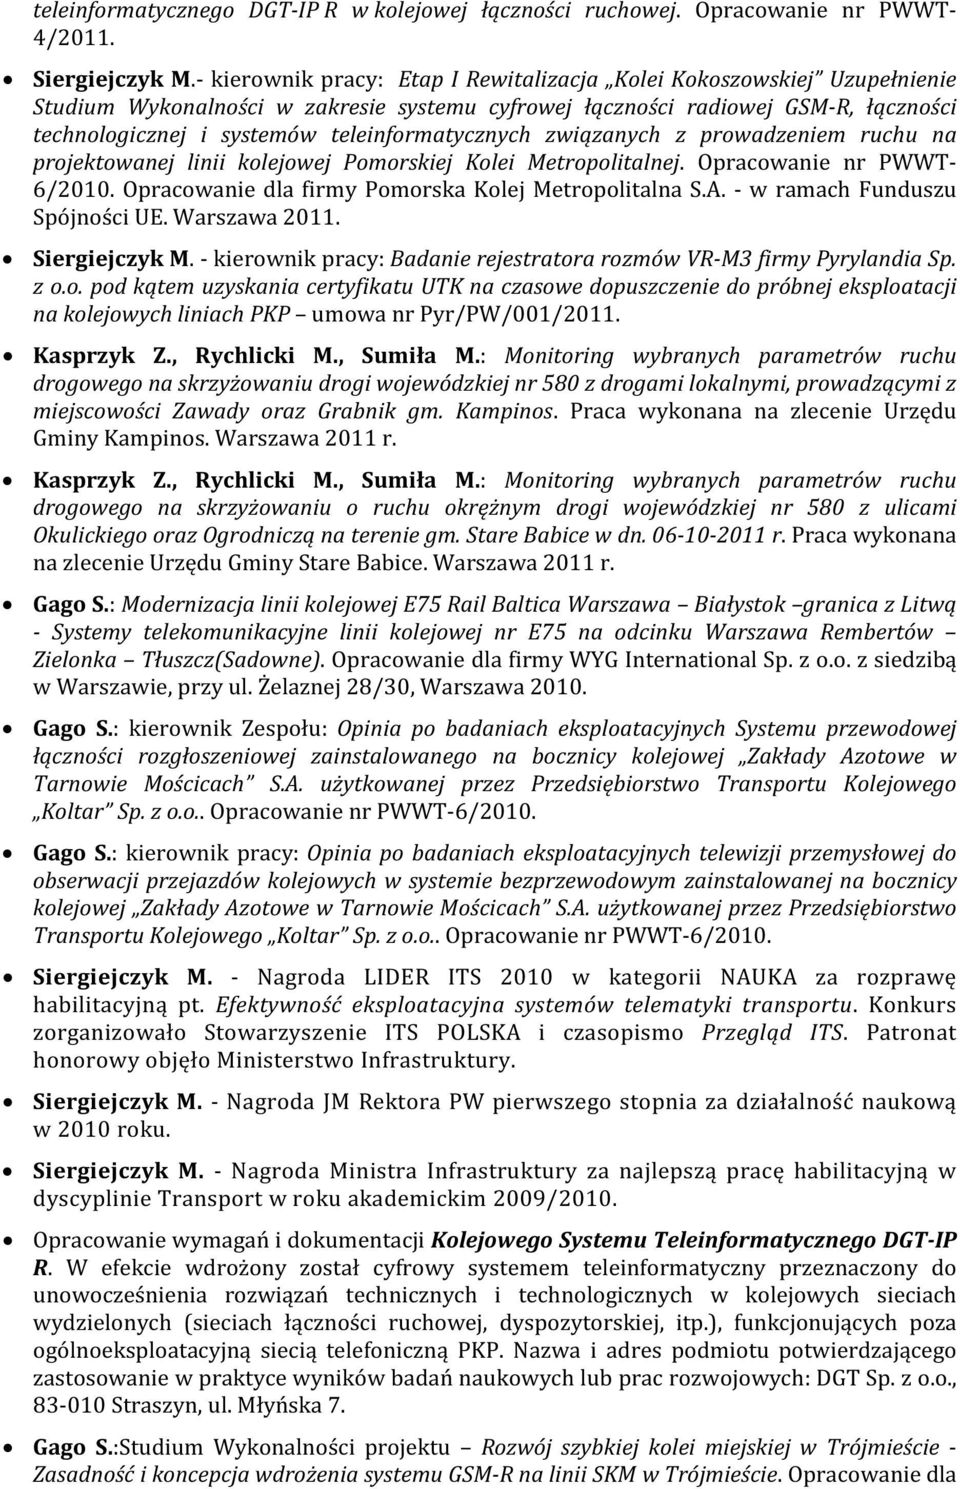 teleinformatycznych związanych z prowadzeniem ruchu na projektowanej linii kolejowej Pomorskiej Kolei Metropolitalnej. Opracowanie nr PWWT- 6/2010.